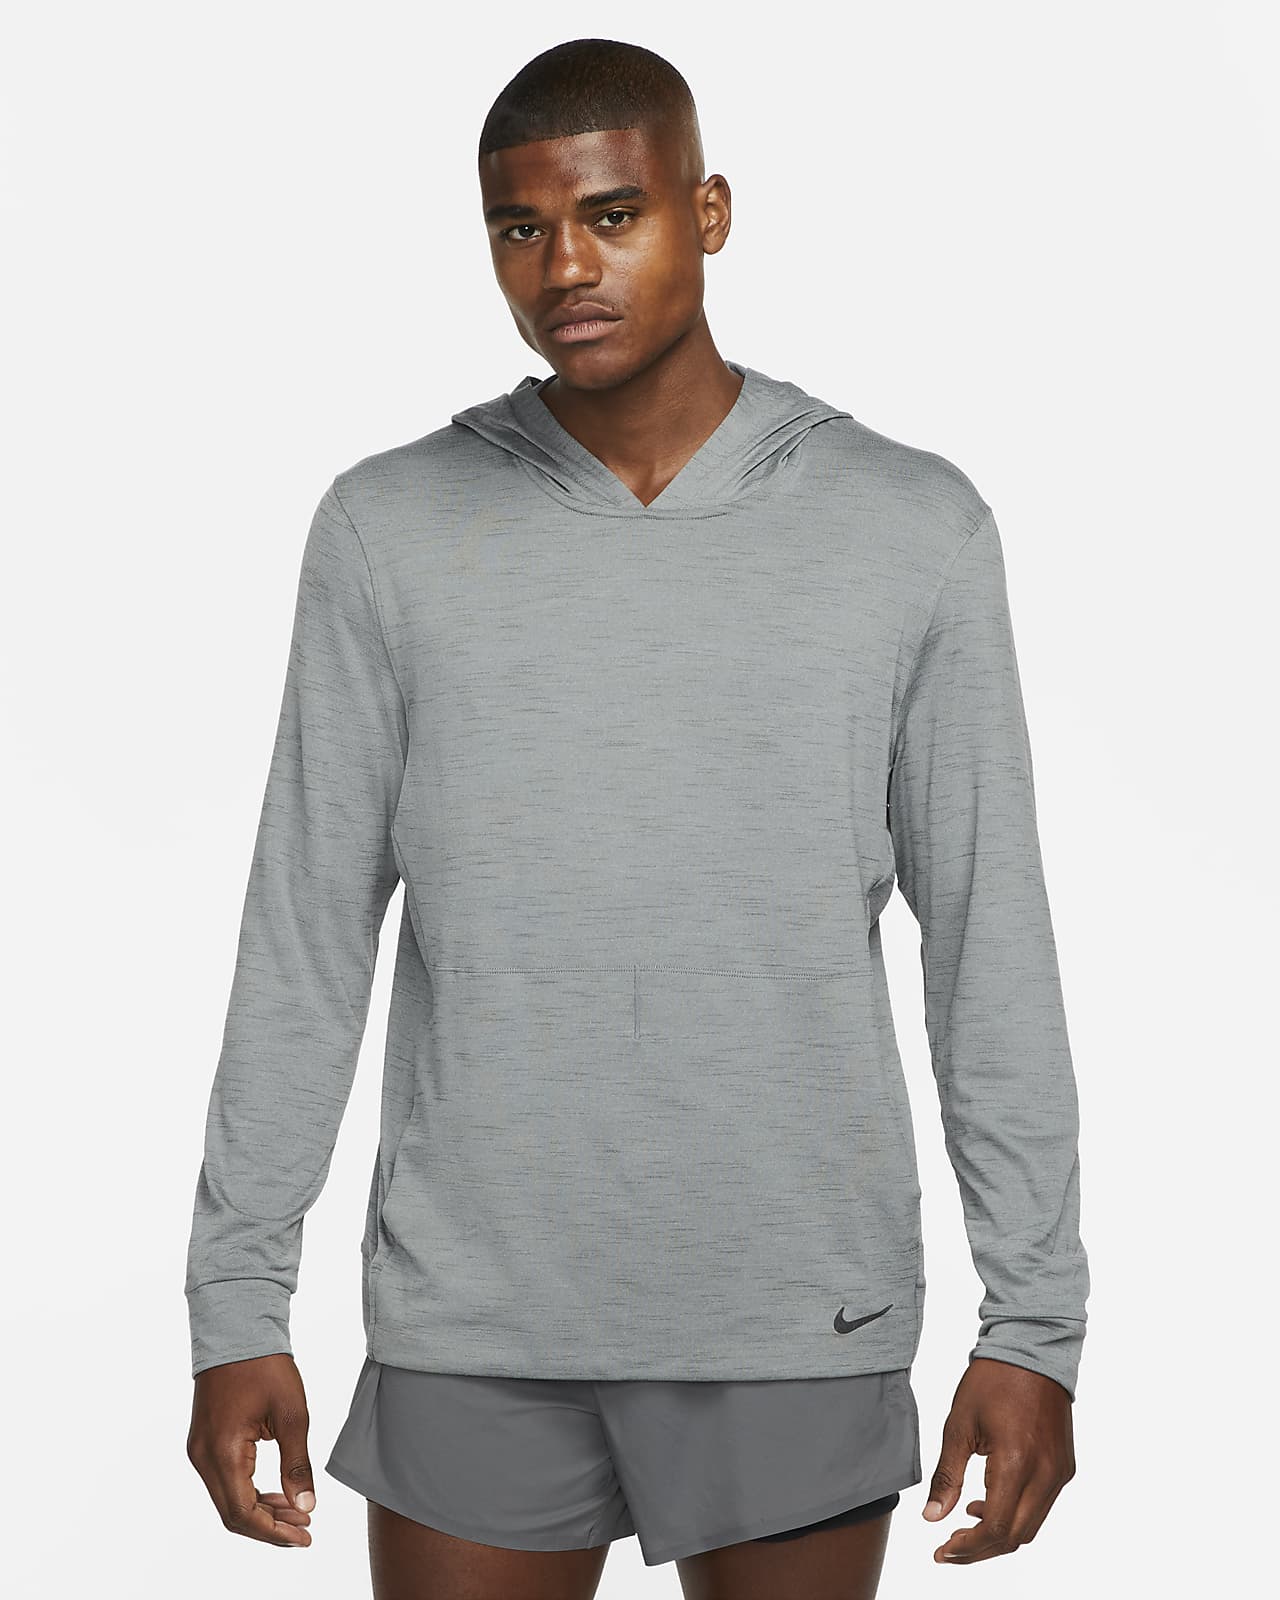 Men's Nike Dry Long Sleeve Hoodie Tee - Black - Size M